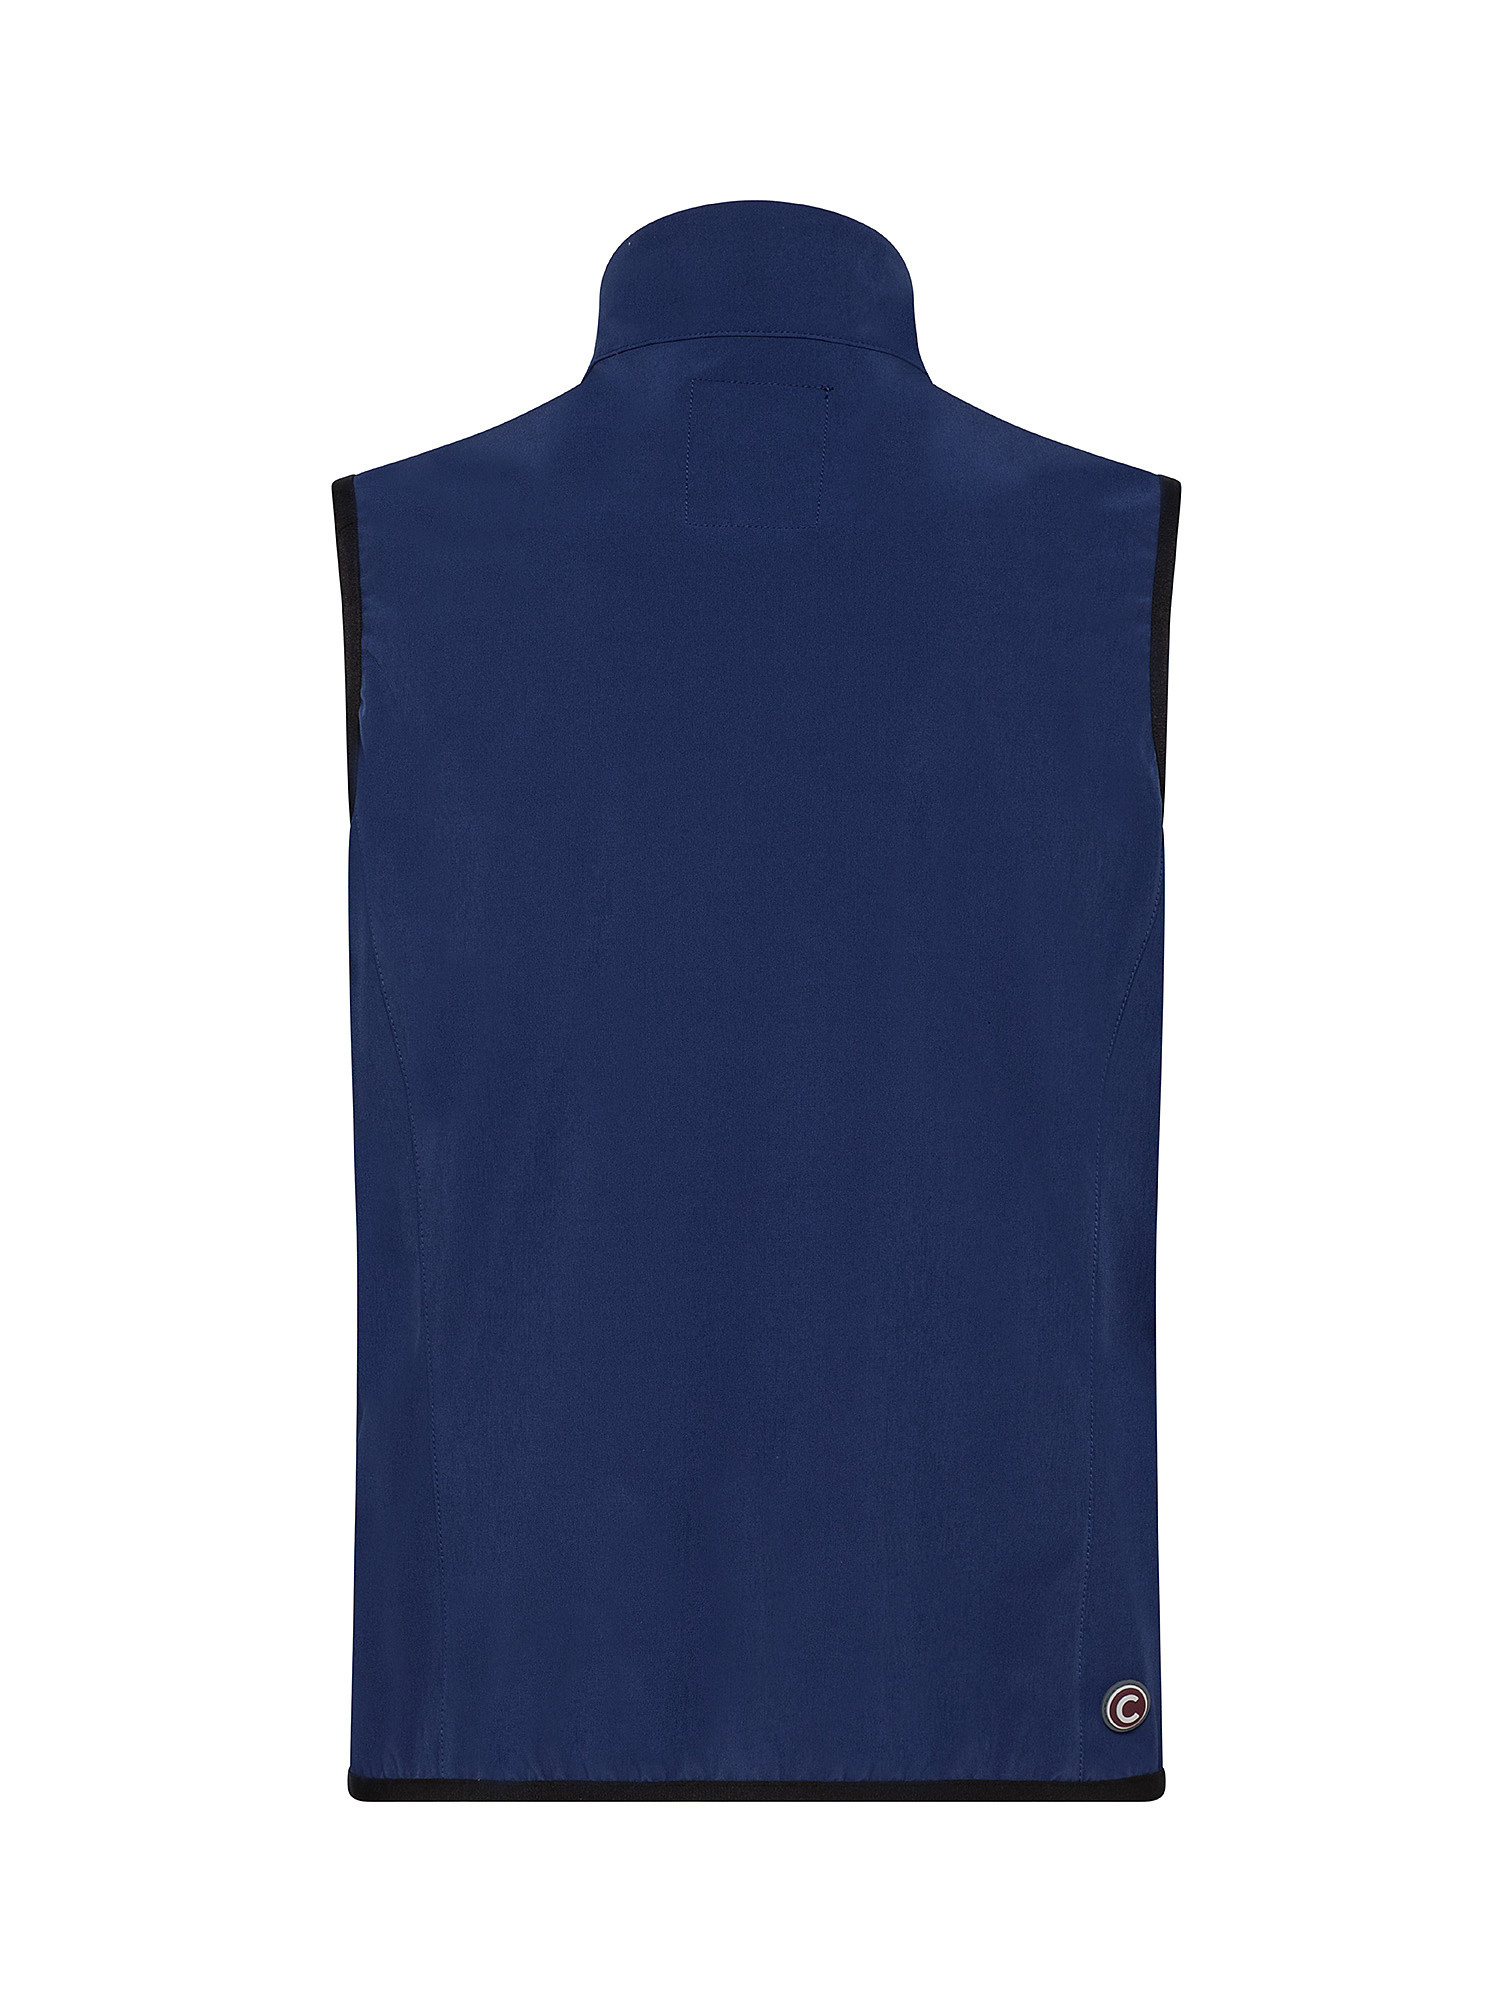 Softshell vest, Blue, large image number 1